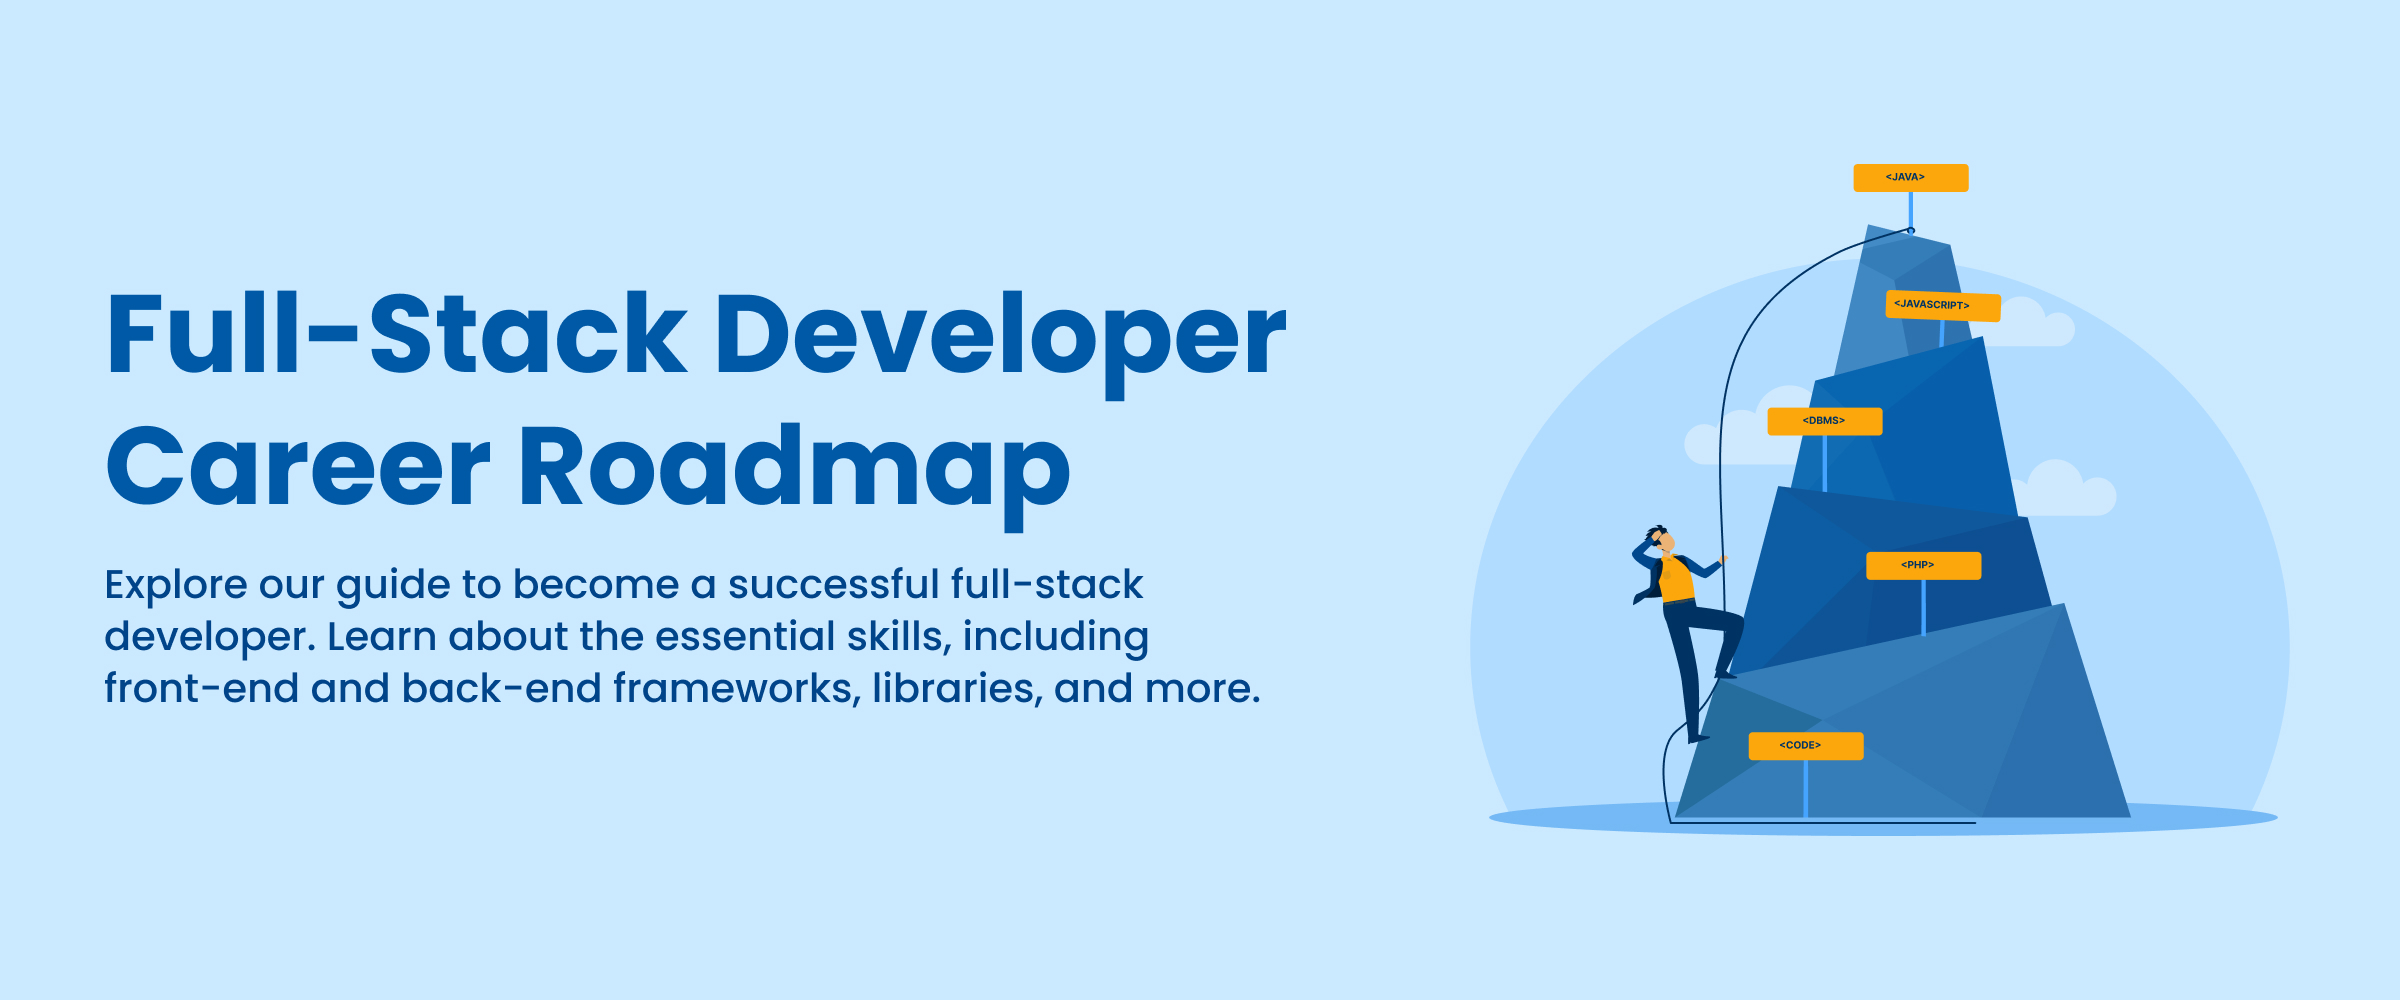 full stack developer roadmap